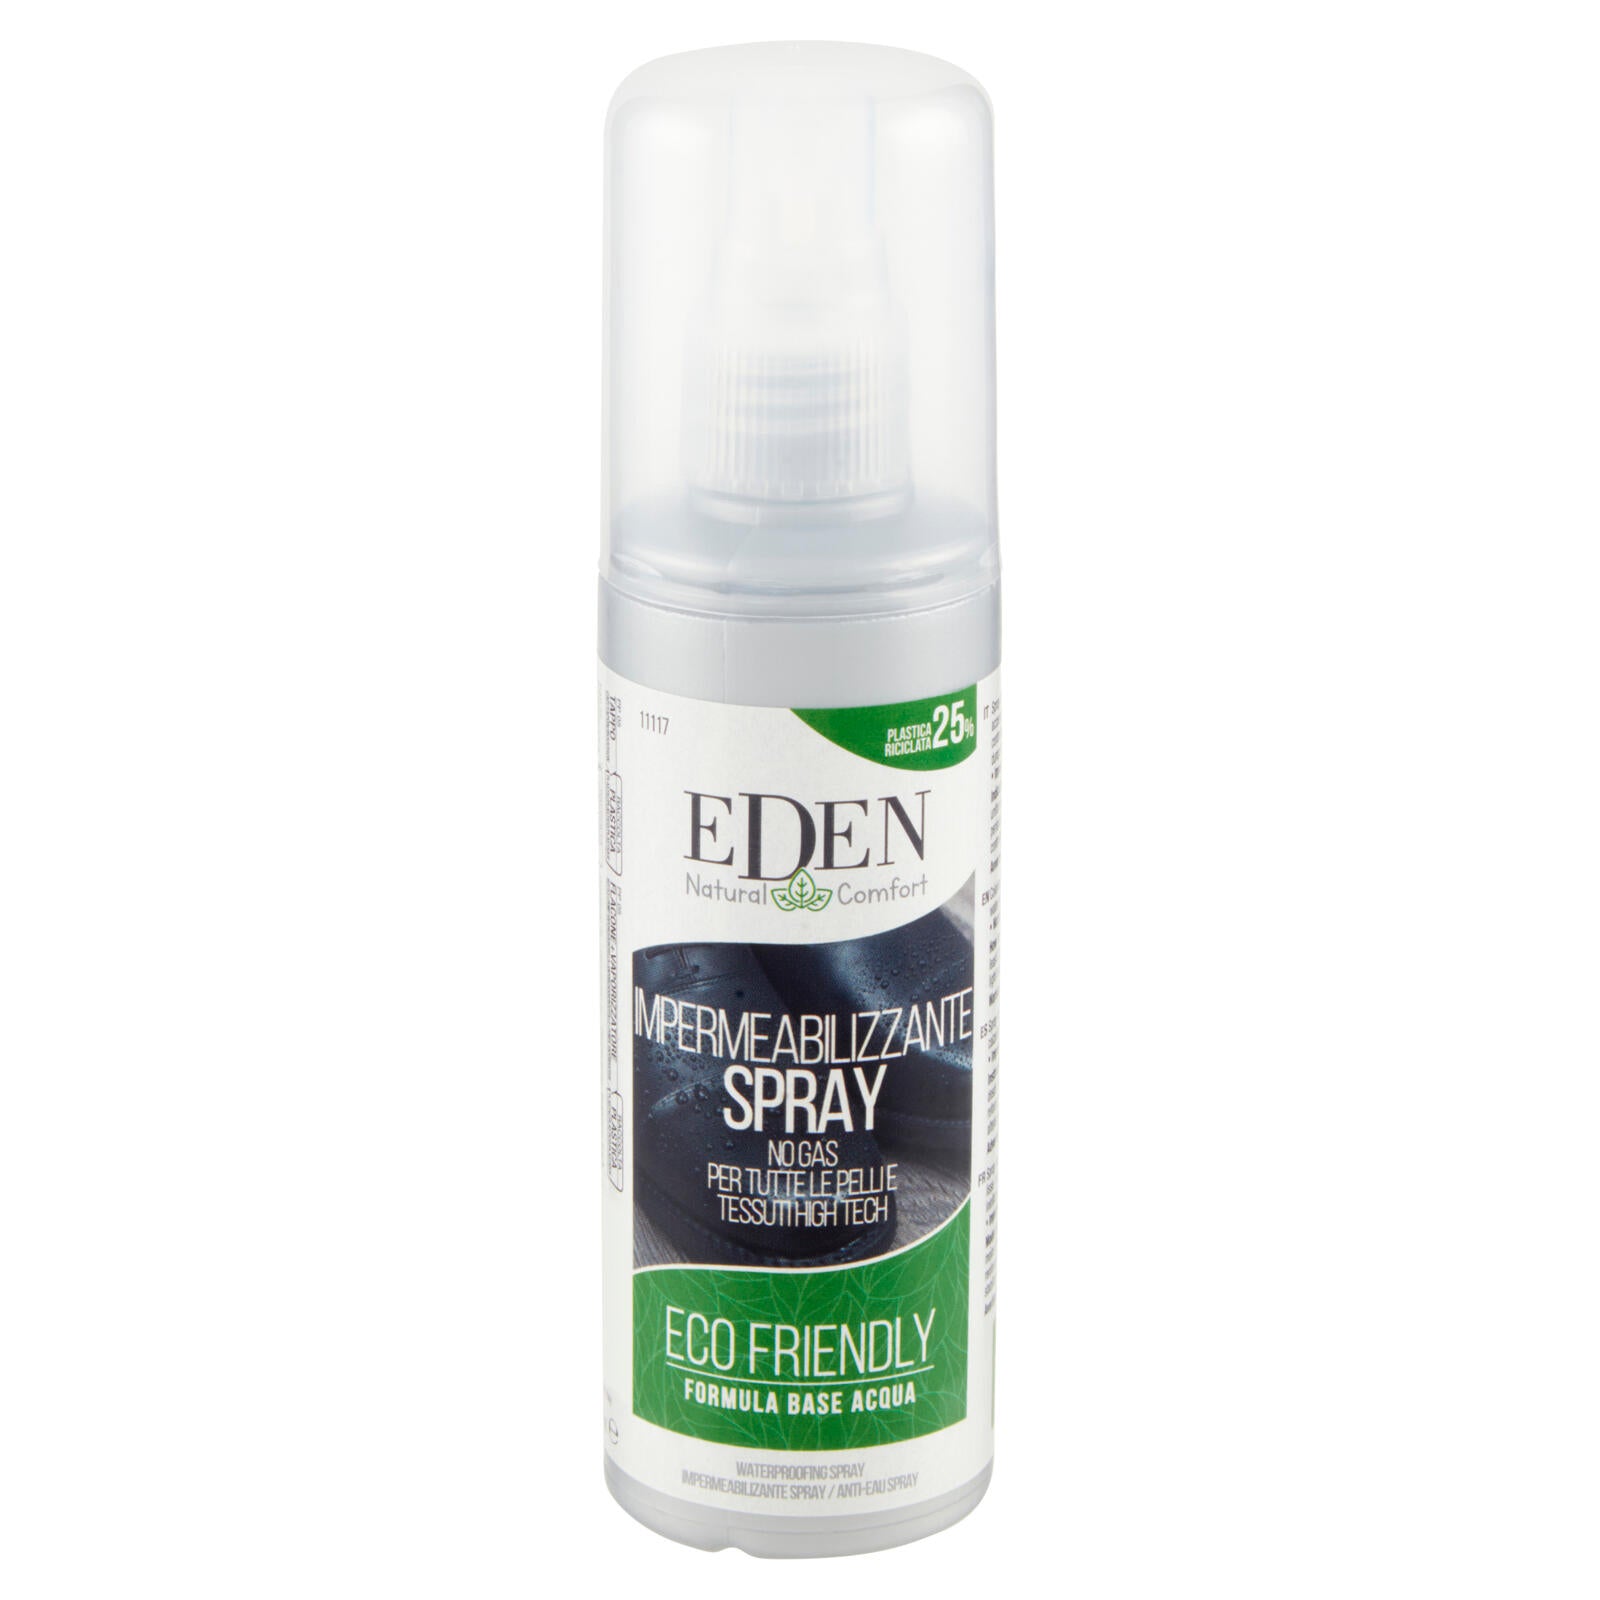 Eden Natural Comfort Impermeabilizzante Spray No Gas per Tutte le Pelli e Tessuti High Tech 100 ml